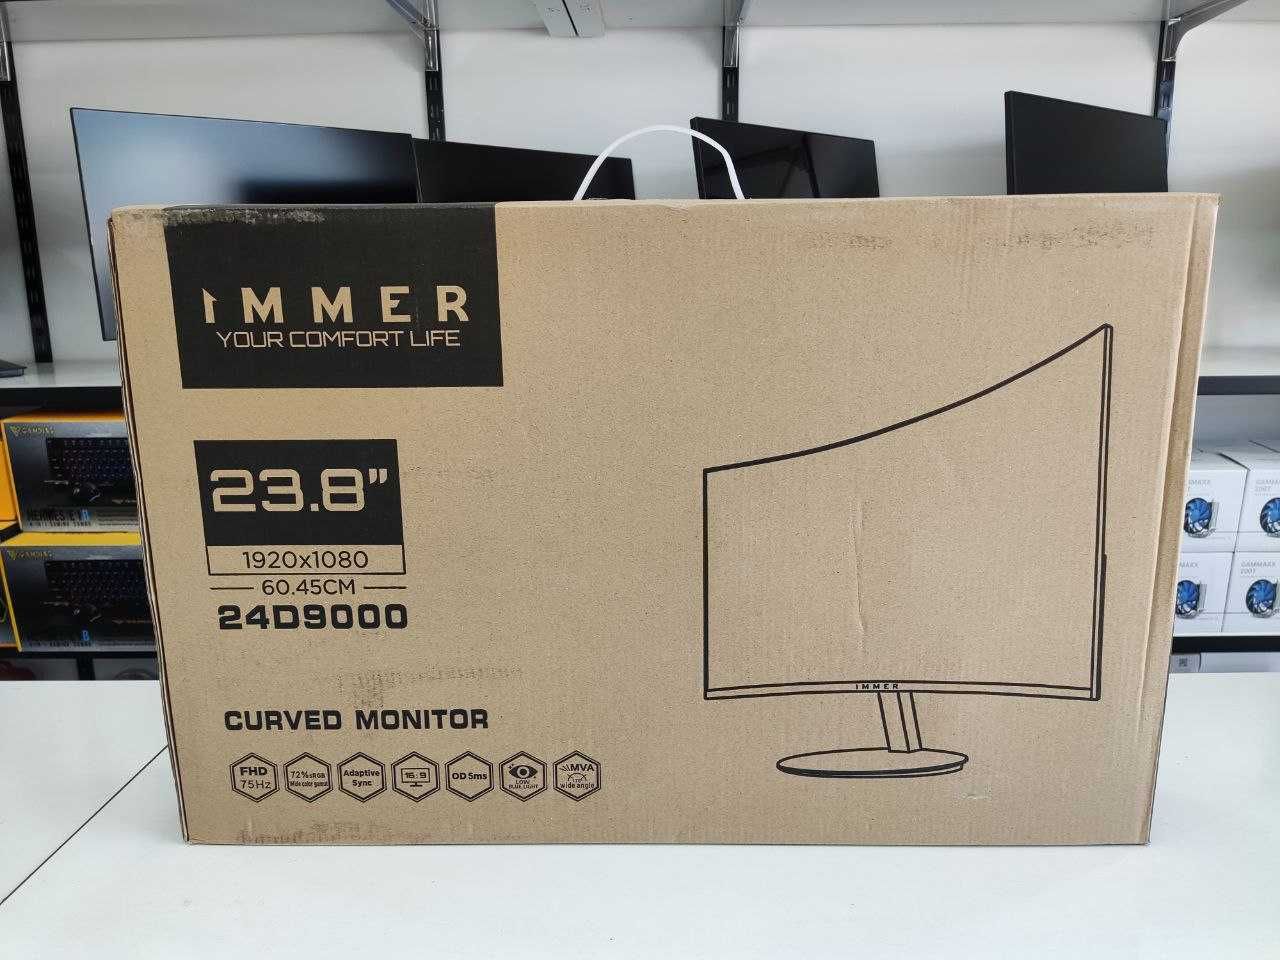 Монитор Immer 24" D9000 Curved FullHD 1920x1080, VGA+HDMI НОВЫЙ